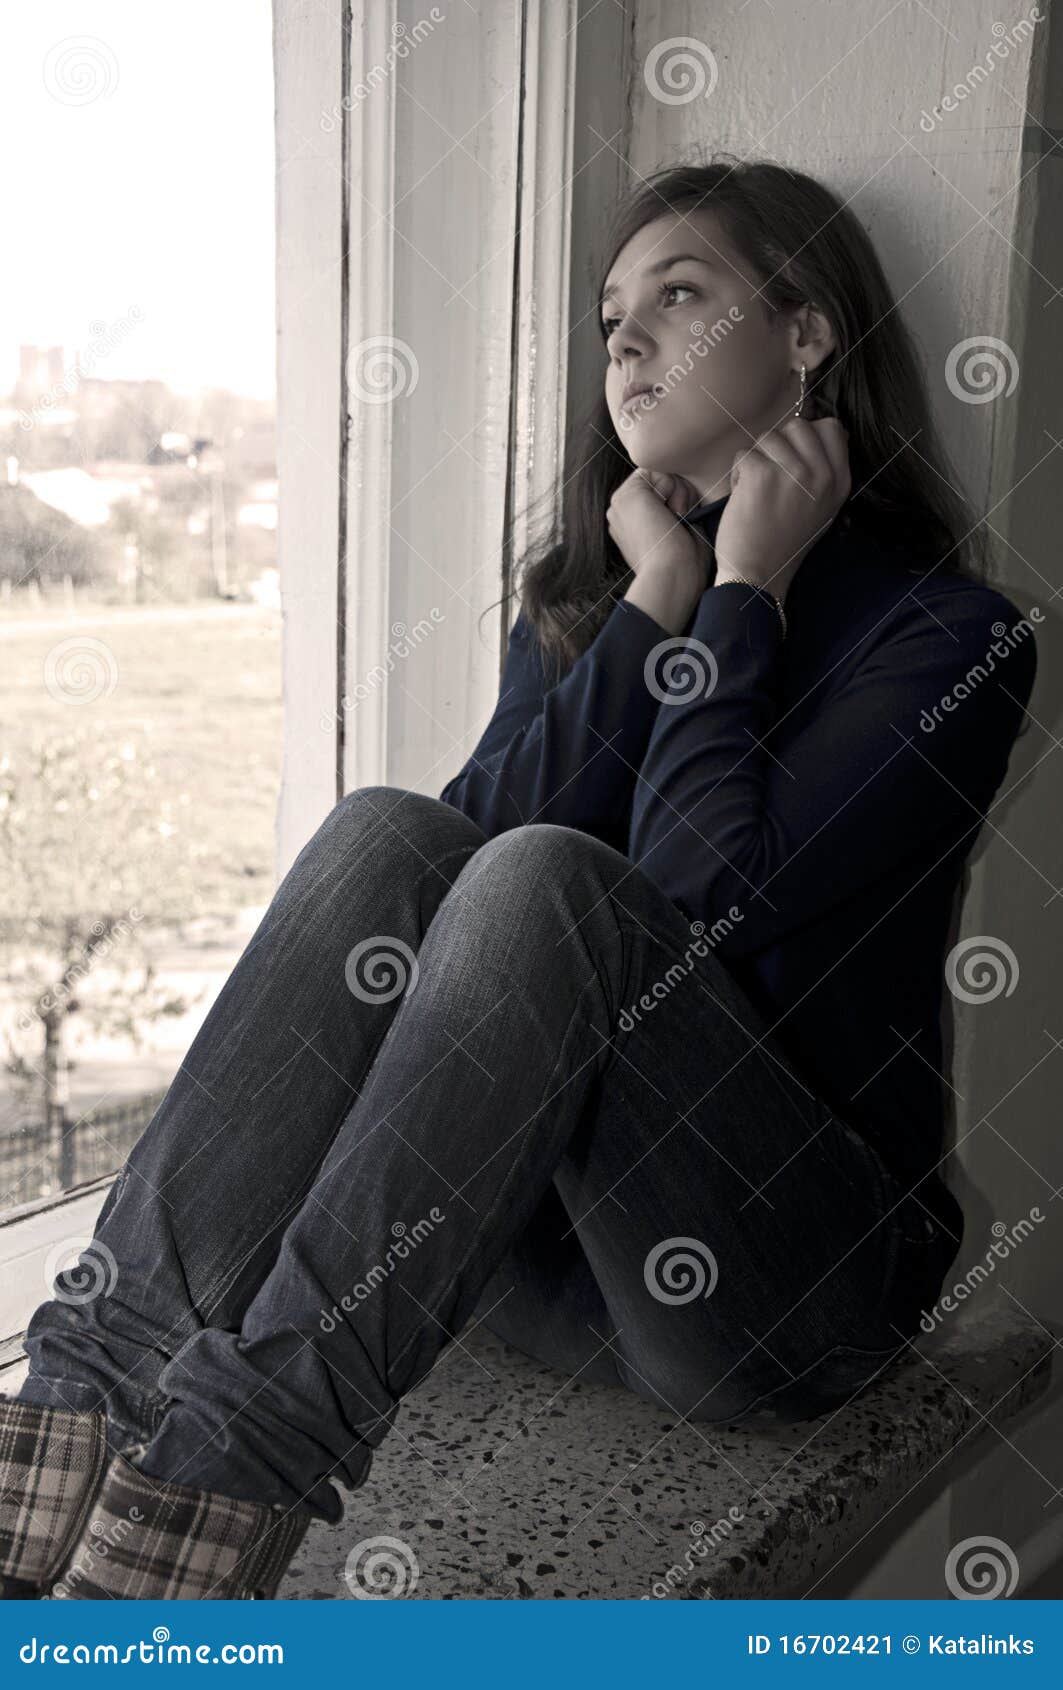 Teenage depression stock image. Image of praying, person - 16702421